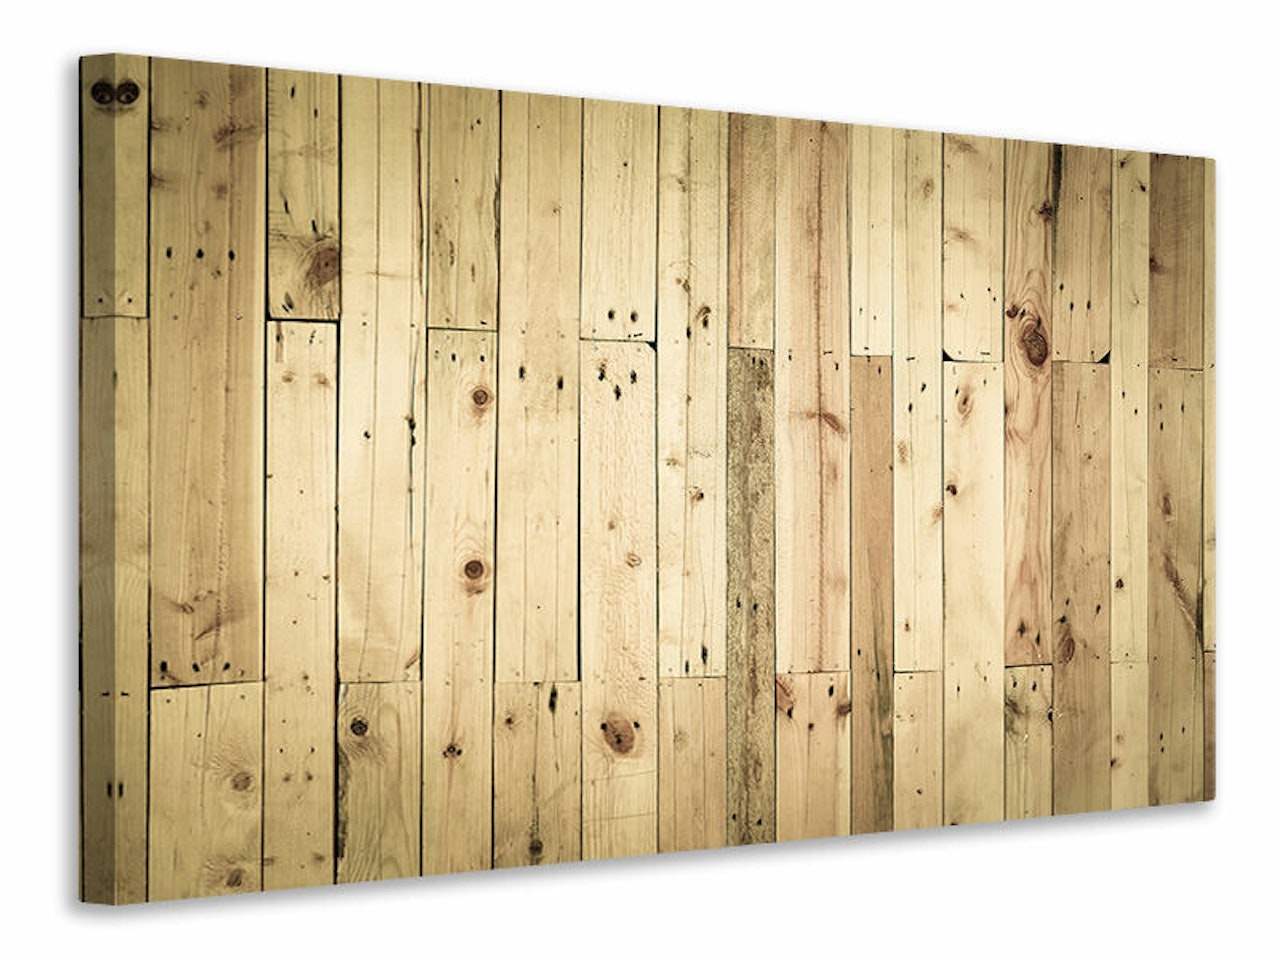 Ljuddämpande tavla - wood panels